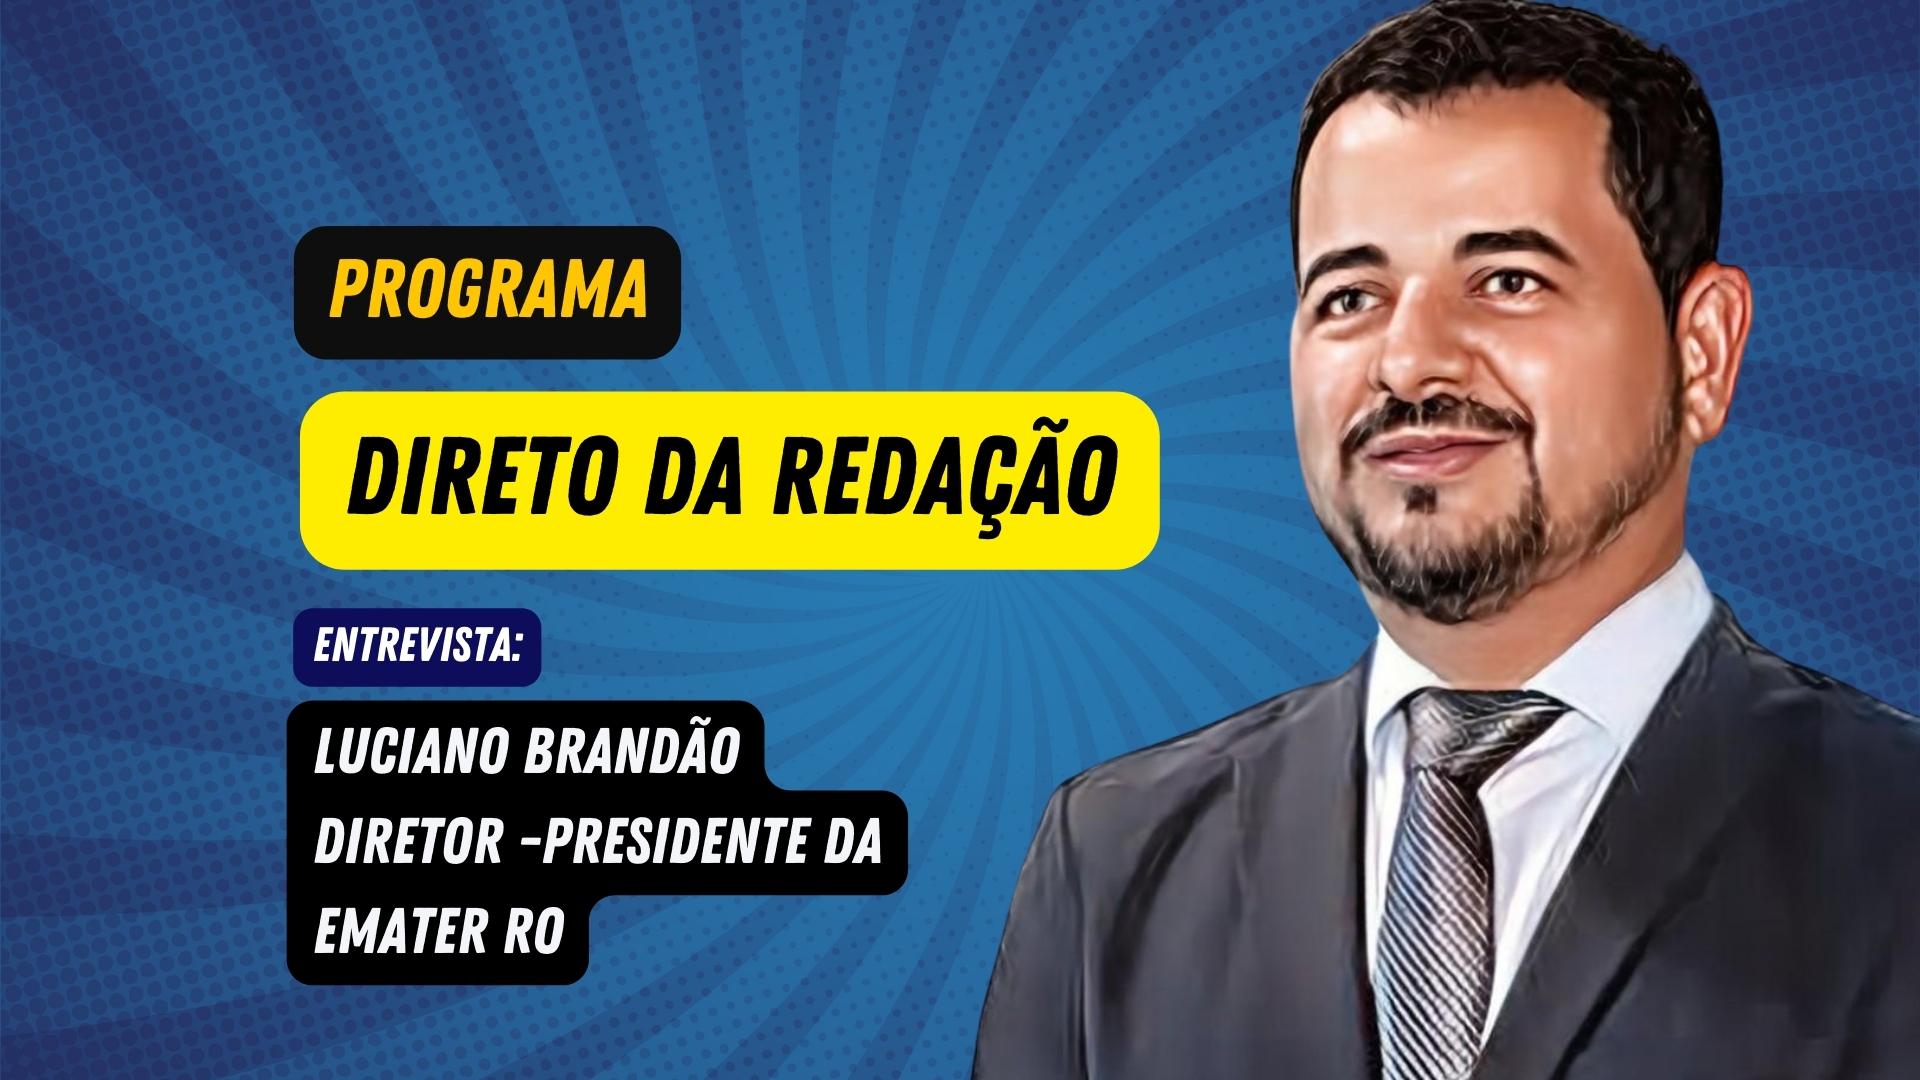 Programa Direto da Redação entrevista: Luciano Brandão, Diretor-Presidente da EMATER-RO